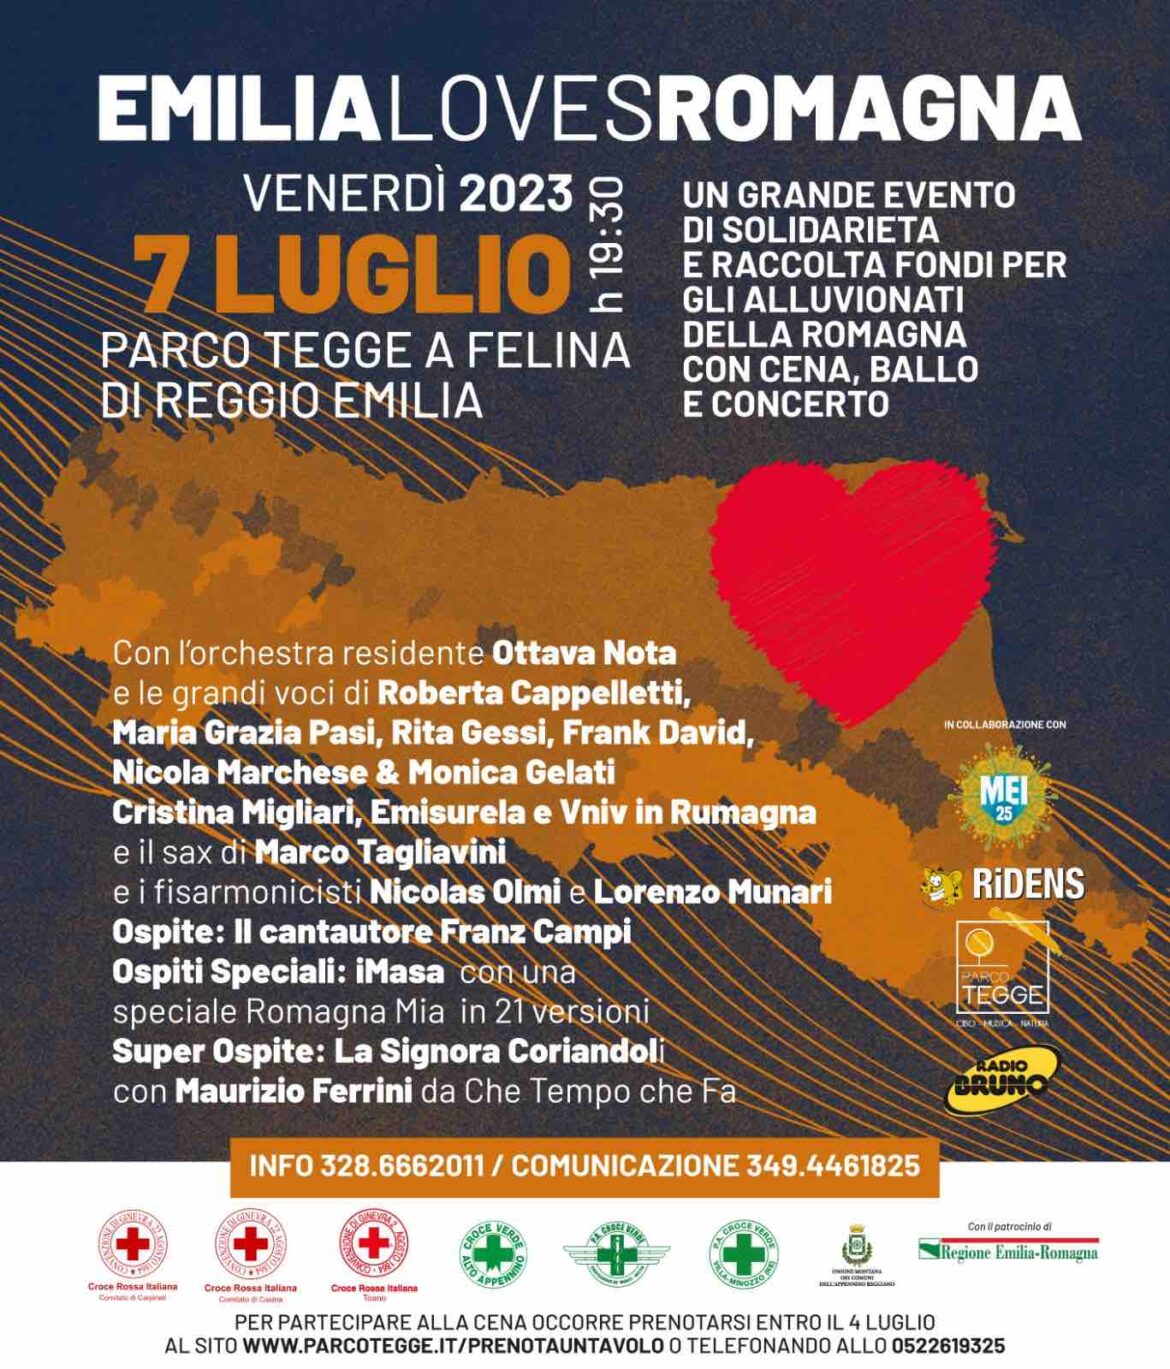 Nasce Emilia Loves Romagna , il grande evento di solidarieta’ per sostenere le popolazioni colpite dall’alluvione che si è abbattuta sul territorio romagnolo, che si terrà venerdì 7 luglio al Parco Tegge di Felina di Reggio Emilia